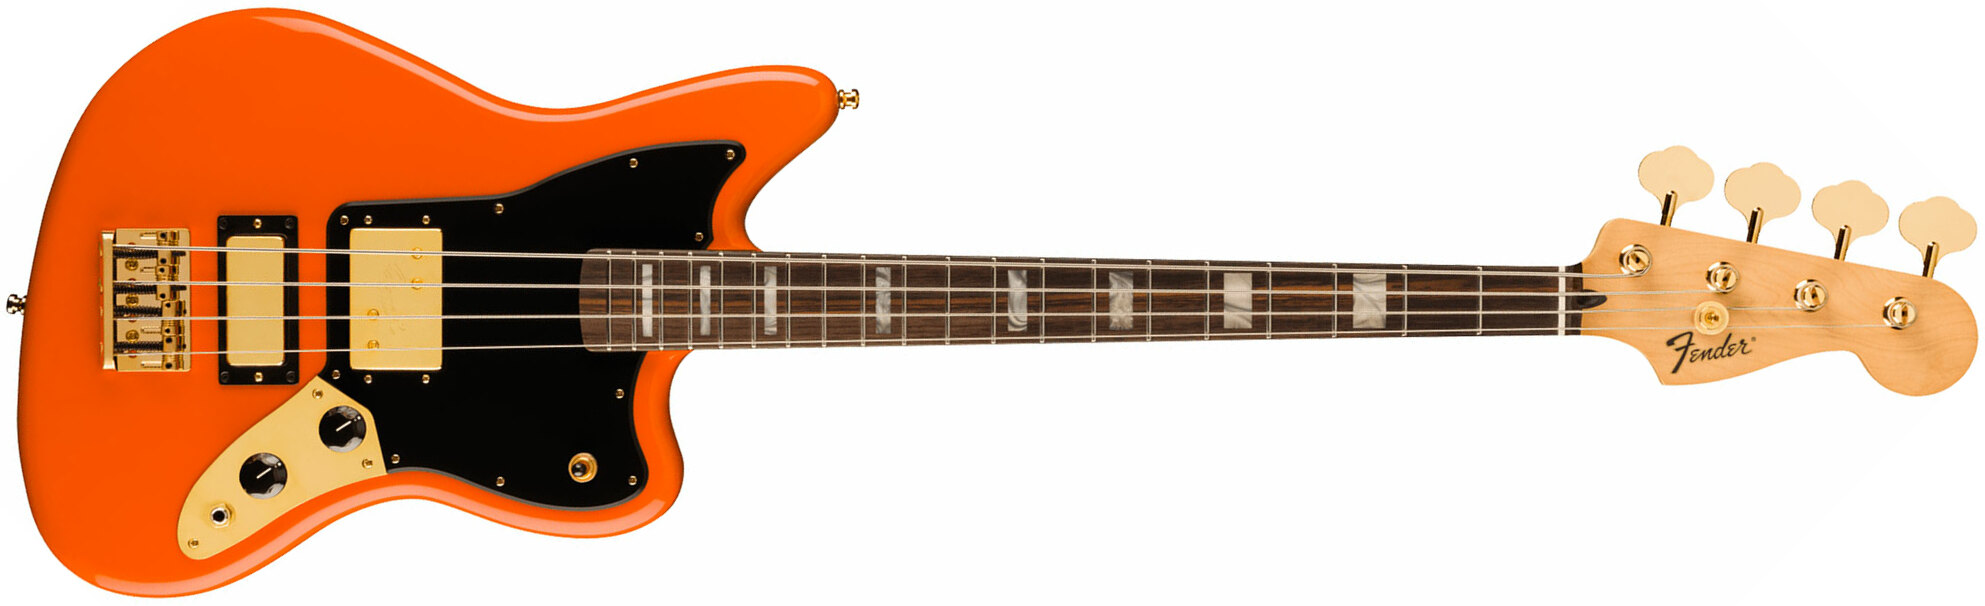 Fender Mike Kerr Jaguar Ltd Mex Signature Rw - Tiger's Blood Orange - Bajo eléctrico de cuerpo sólido - Main picture